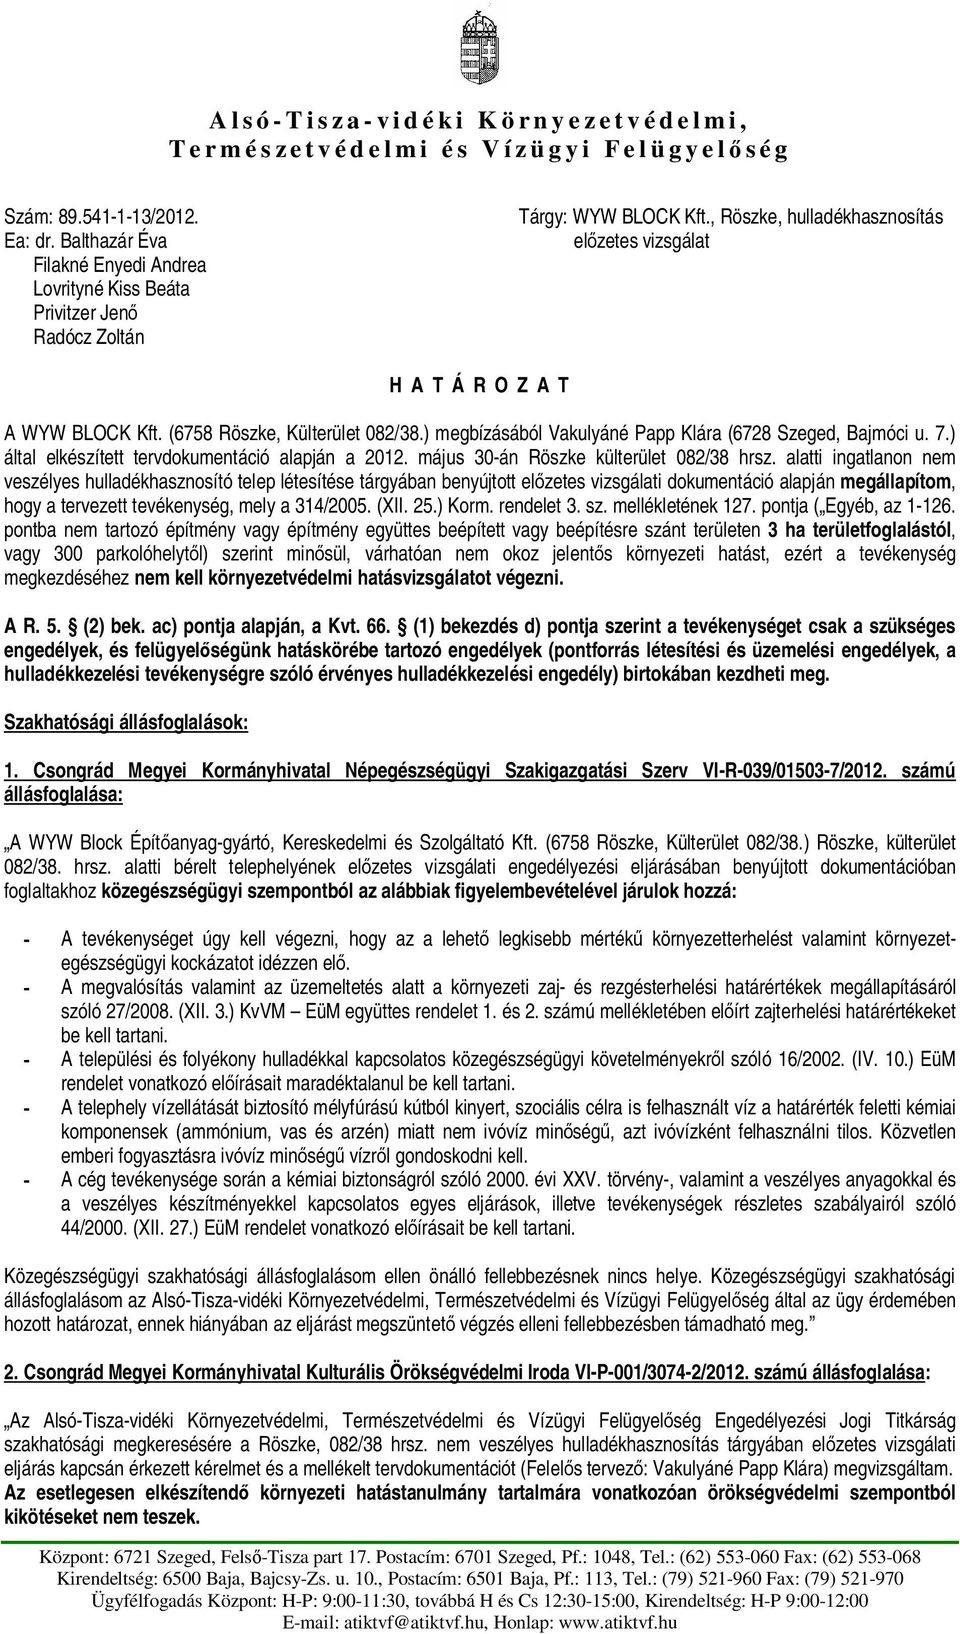 (6758 Röszke, Külterület 082/38.) megbízásából Vakulyáné Papp Klára (6728 Szeged, Bajmóci u. 7.) által elkészített tervdokumentáció alapján a 2012. május 30-án Röszke külterület 082/38 hrsz.